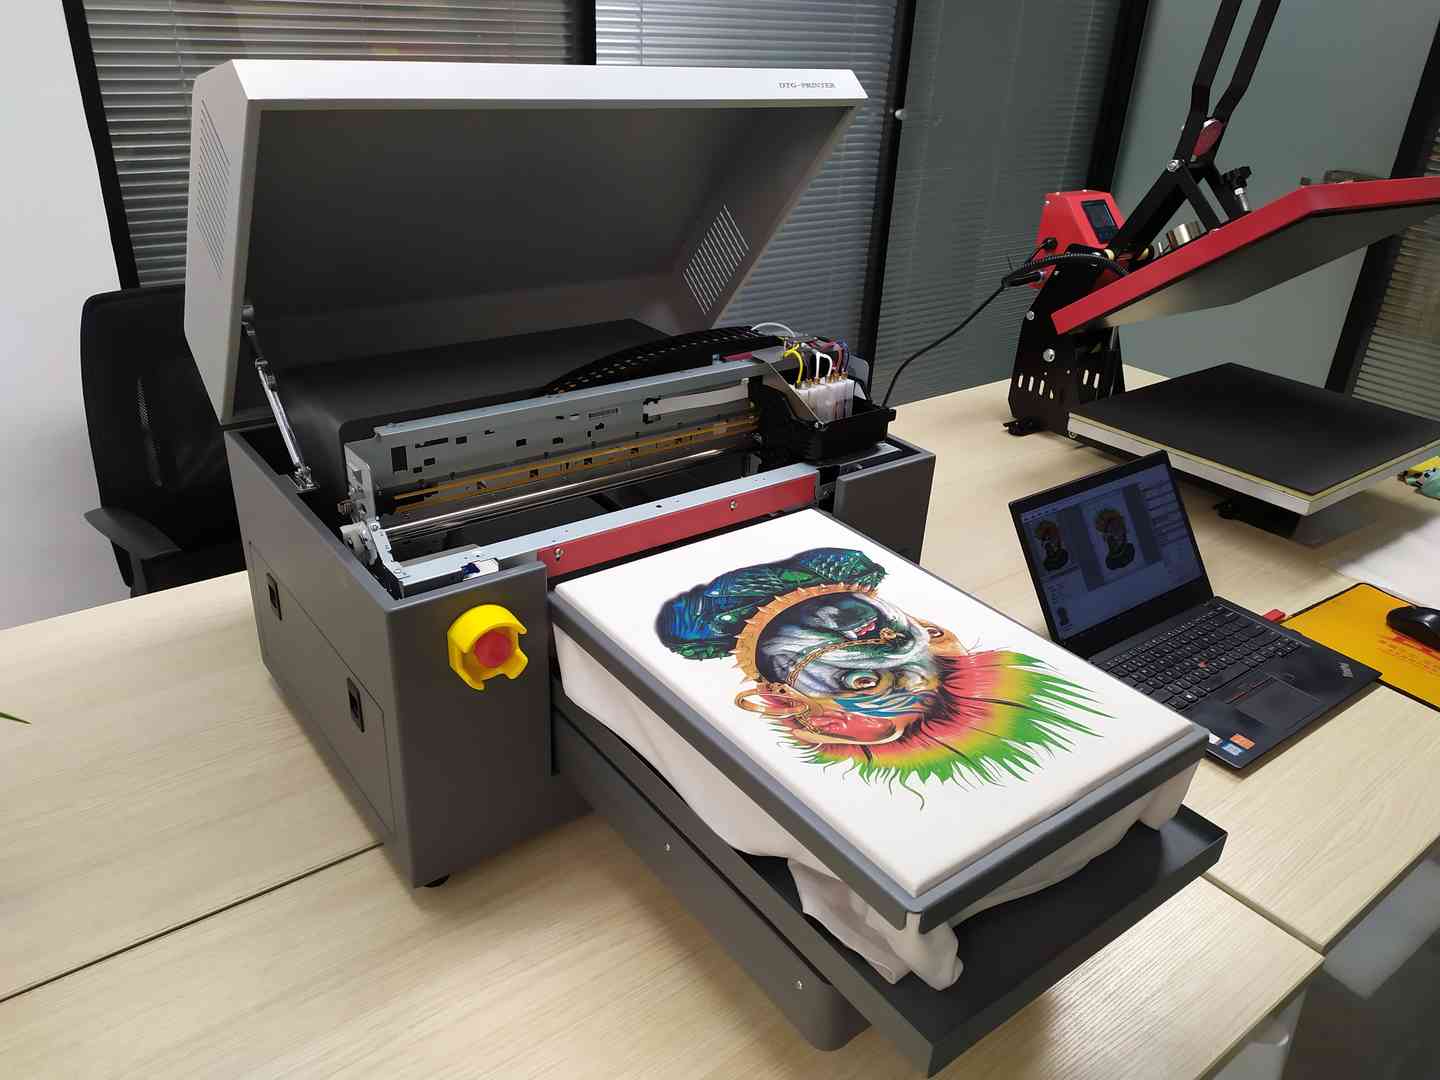 DTG Printer A3 Size Print T-Shirt Machine, Impresoras De Camisetas - China  T-Shirt Printer, DTG Printer